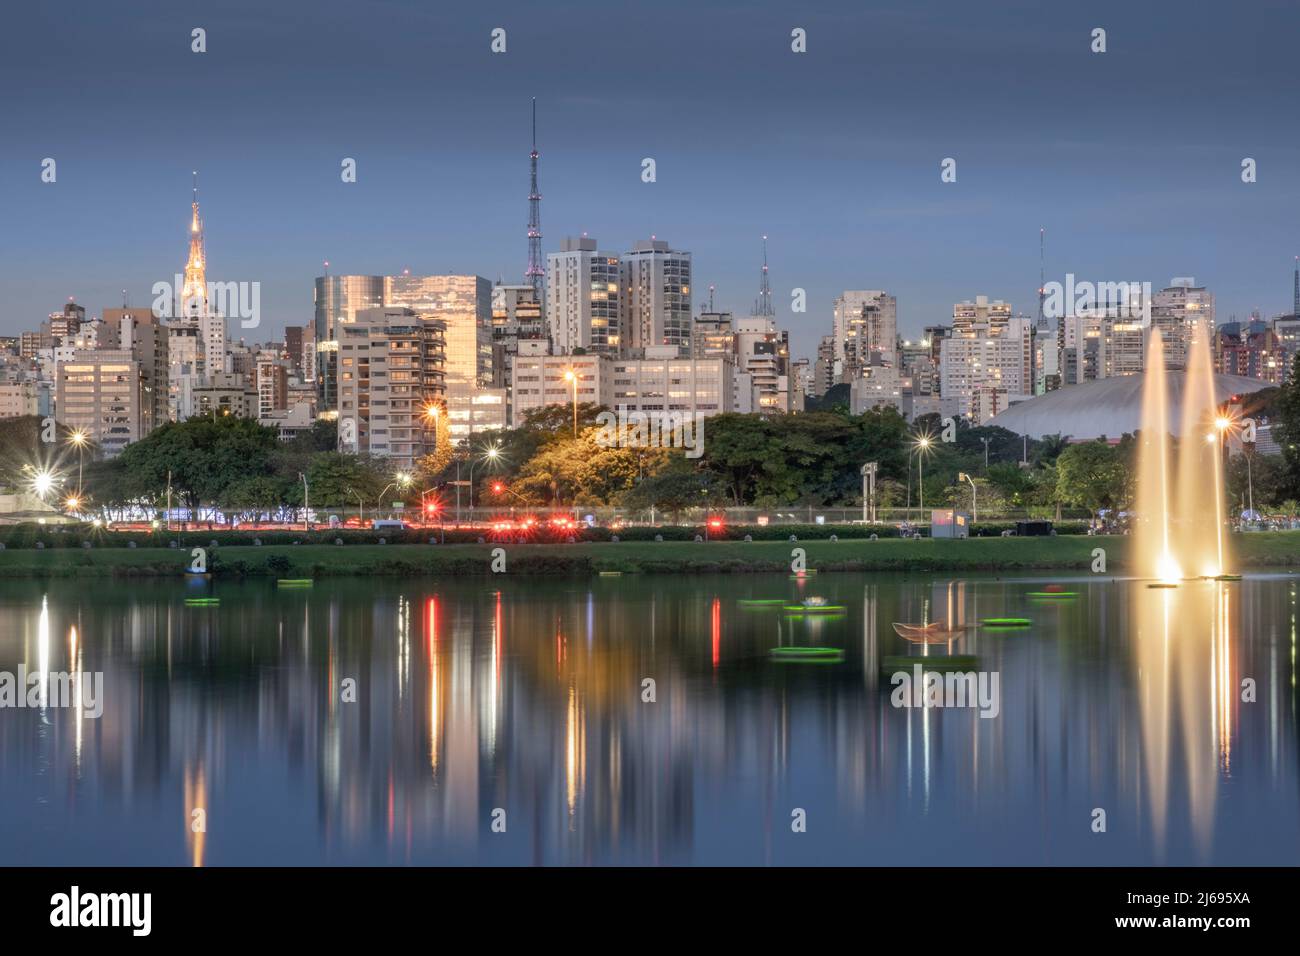 Lo skyline urbano del centro si riflette nel lago Lago das Garcas al crepuscolo, Parco Ibirapuera, San Paolo, Brasile Foto Stock